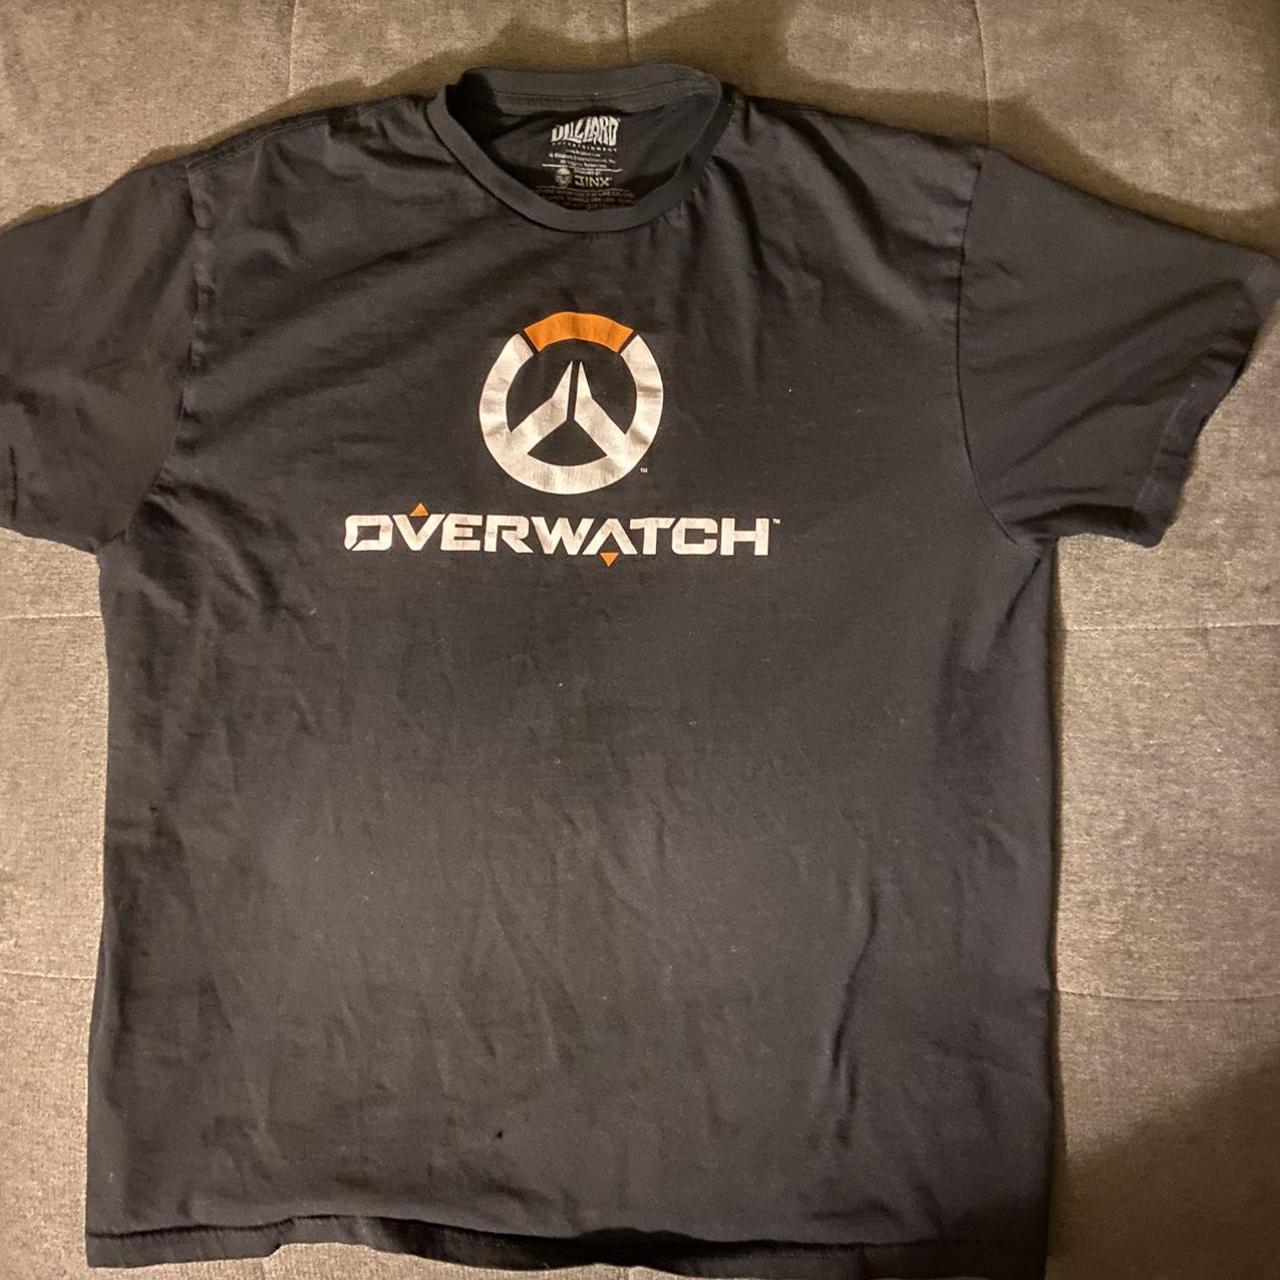 Overwatch Men's Black T-shirt